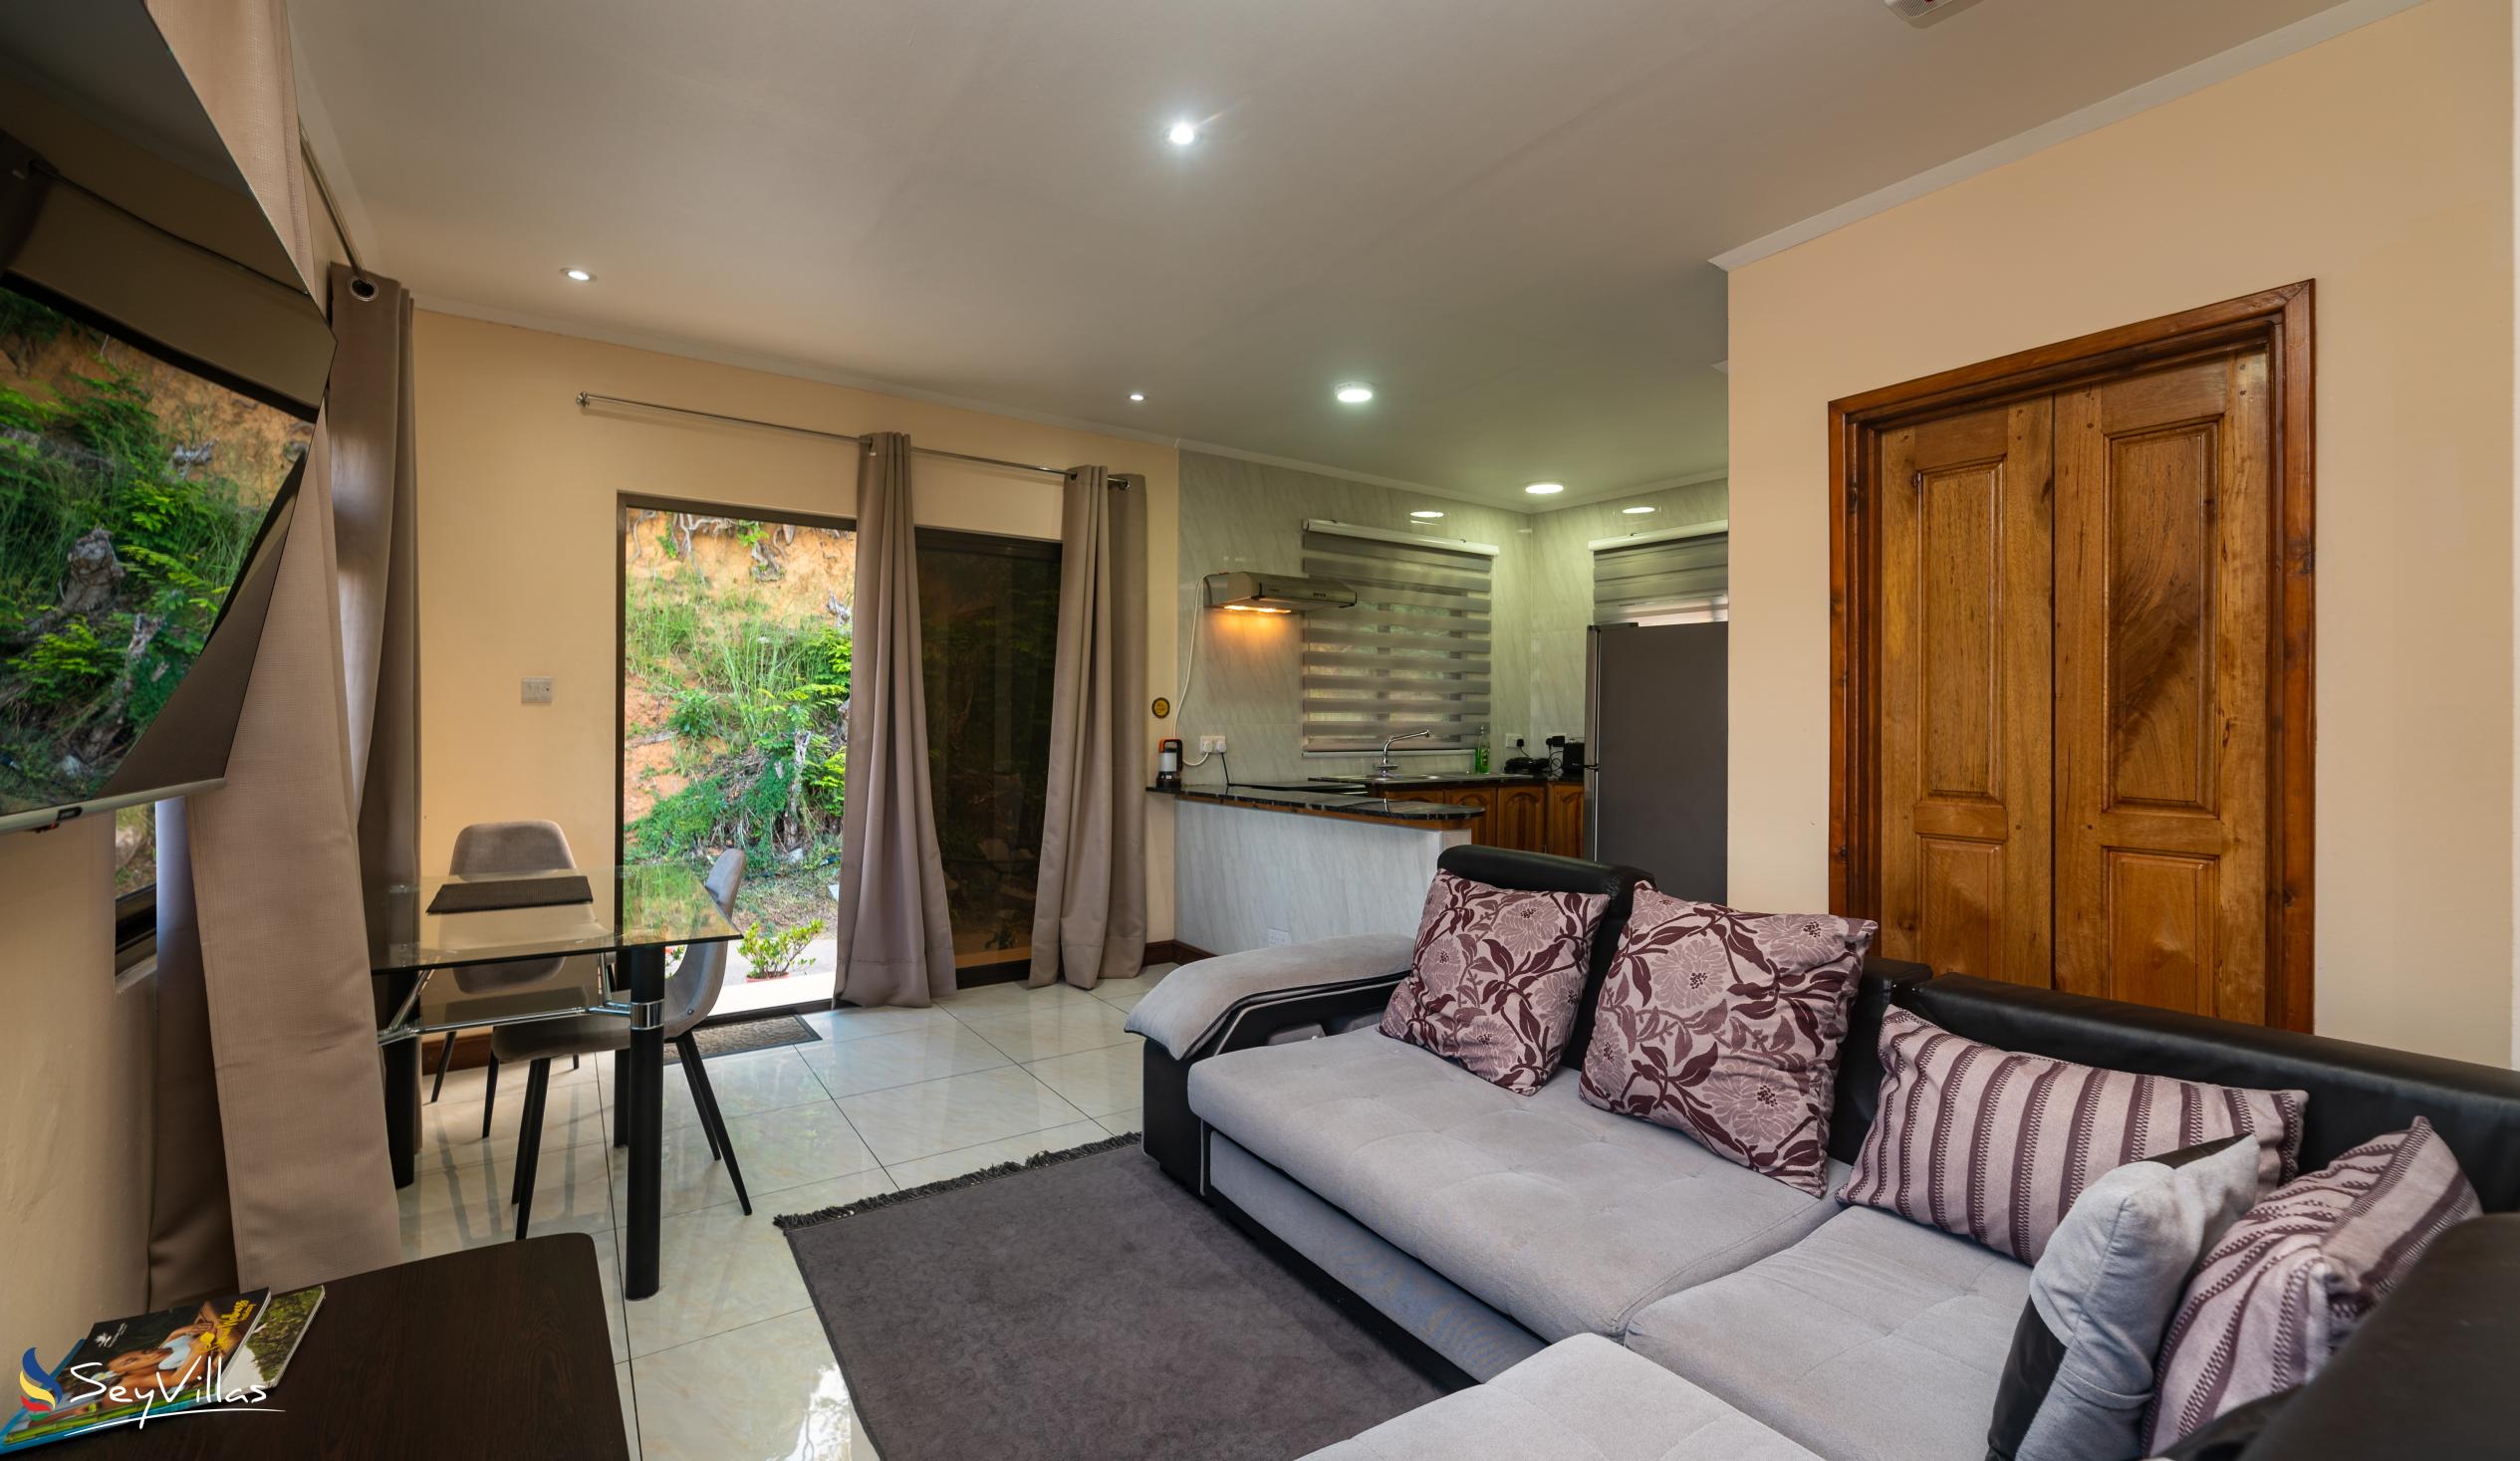 Photo 29: Maison L'Horizon - 1-Bedroom Apartment Zekler - Mahé (Seychelles)